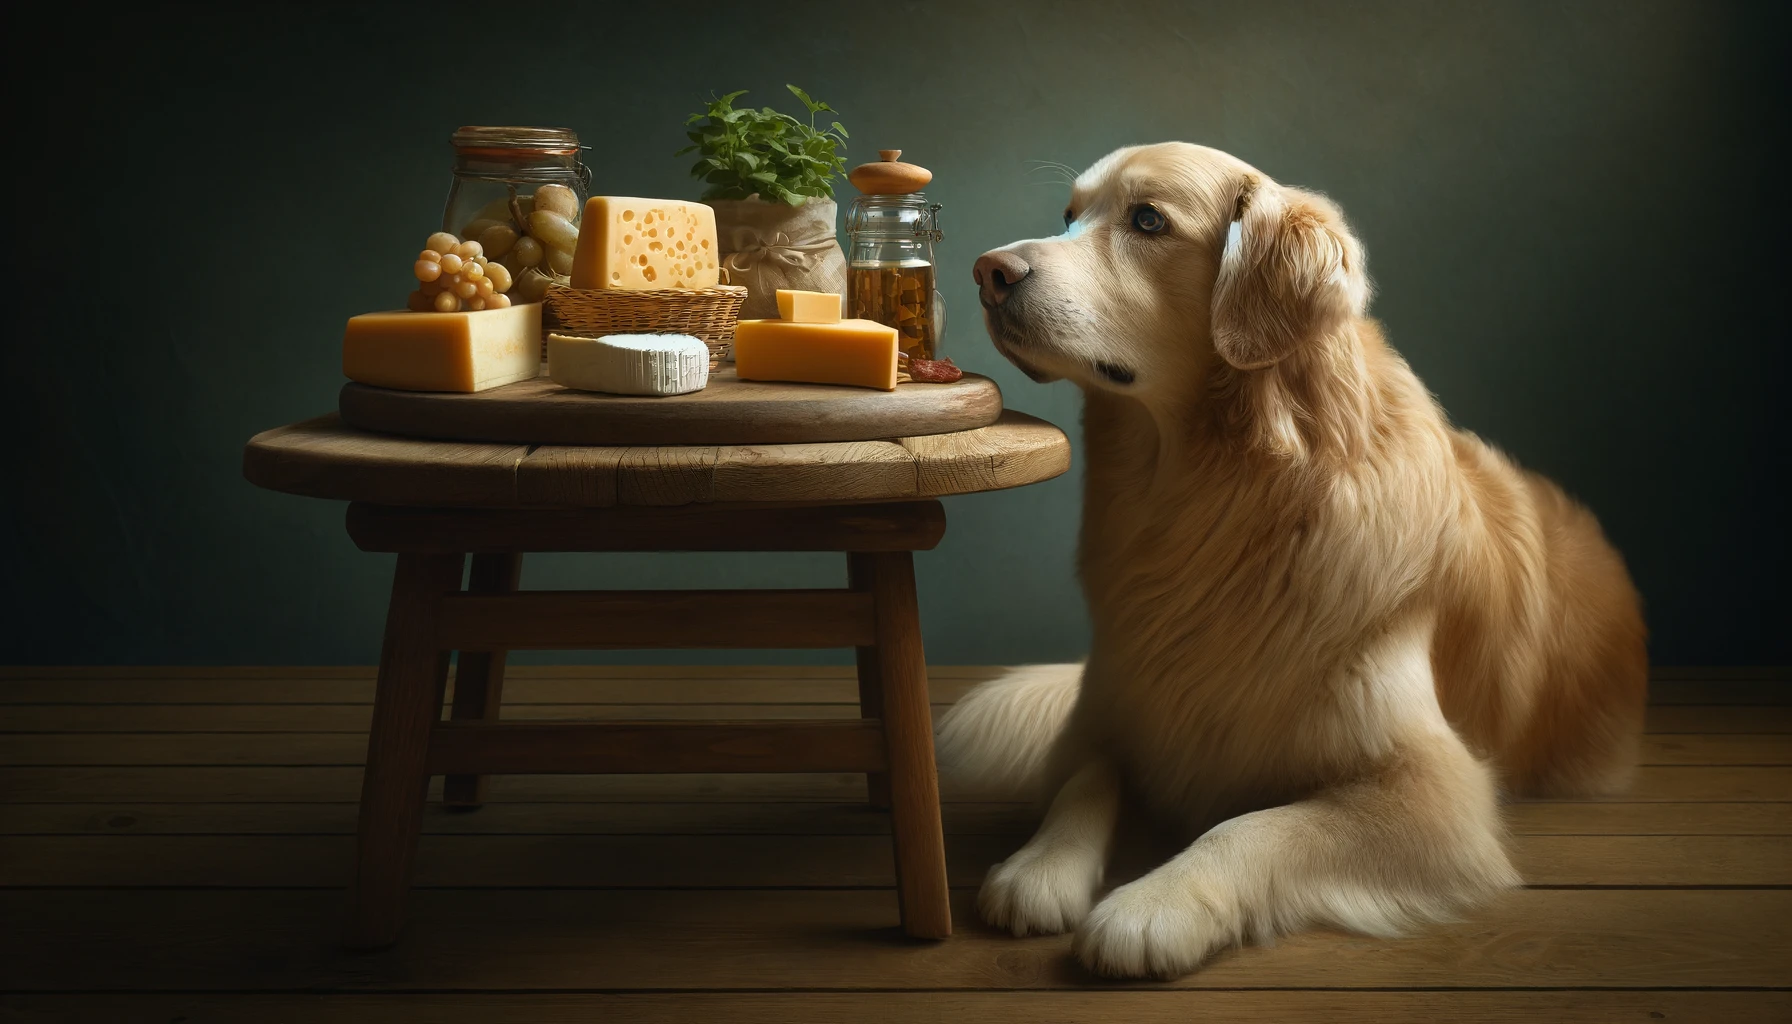 Dürfen Hunde Käse essen?